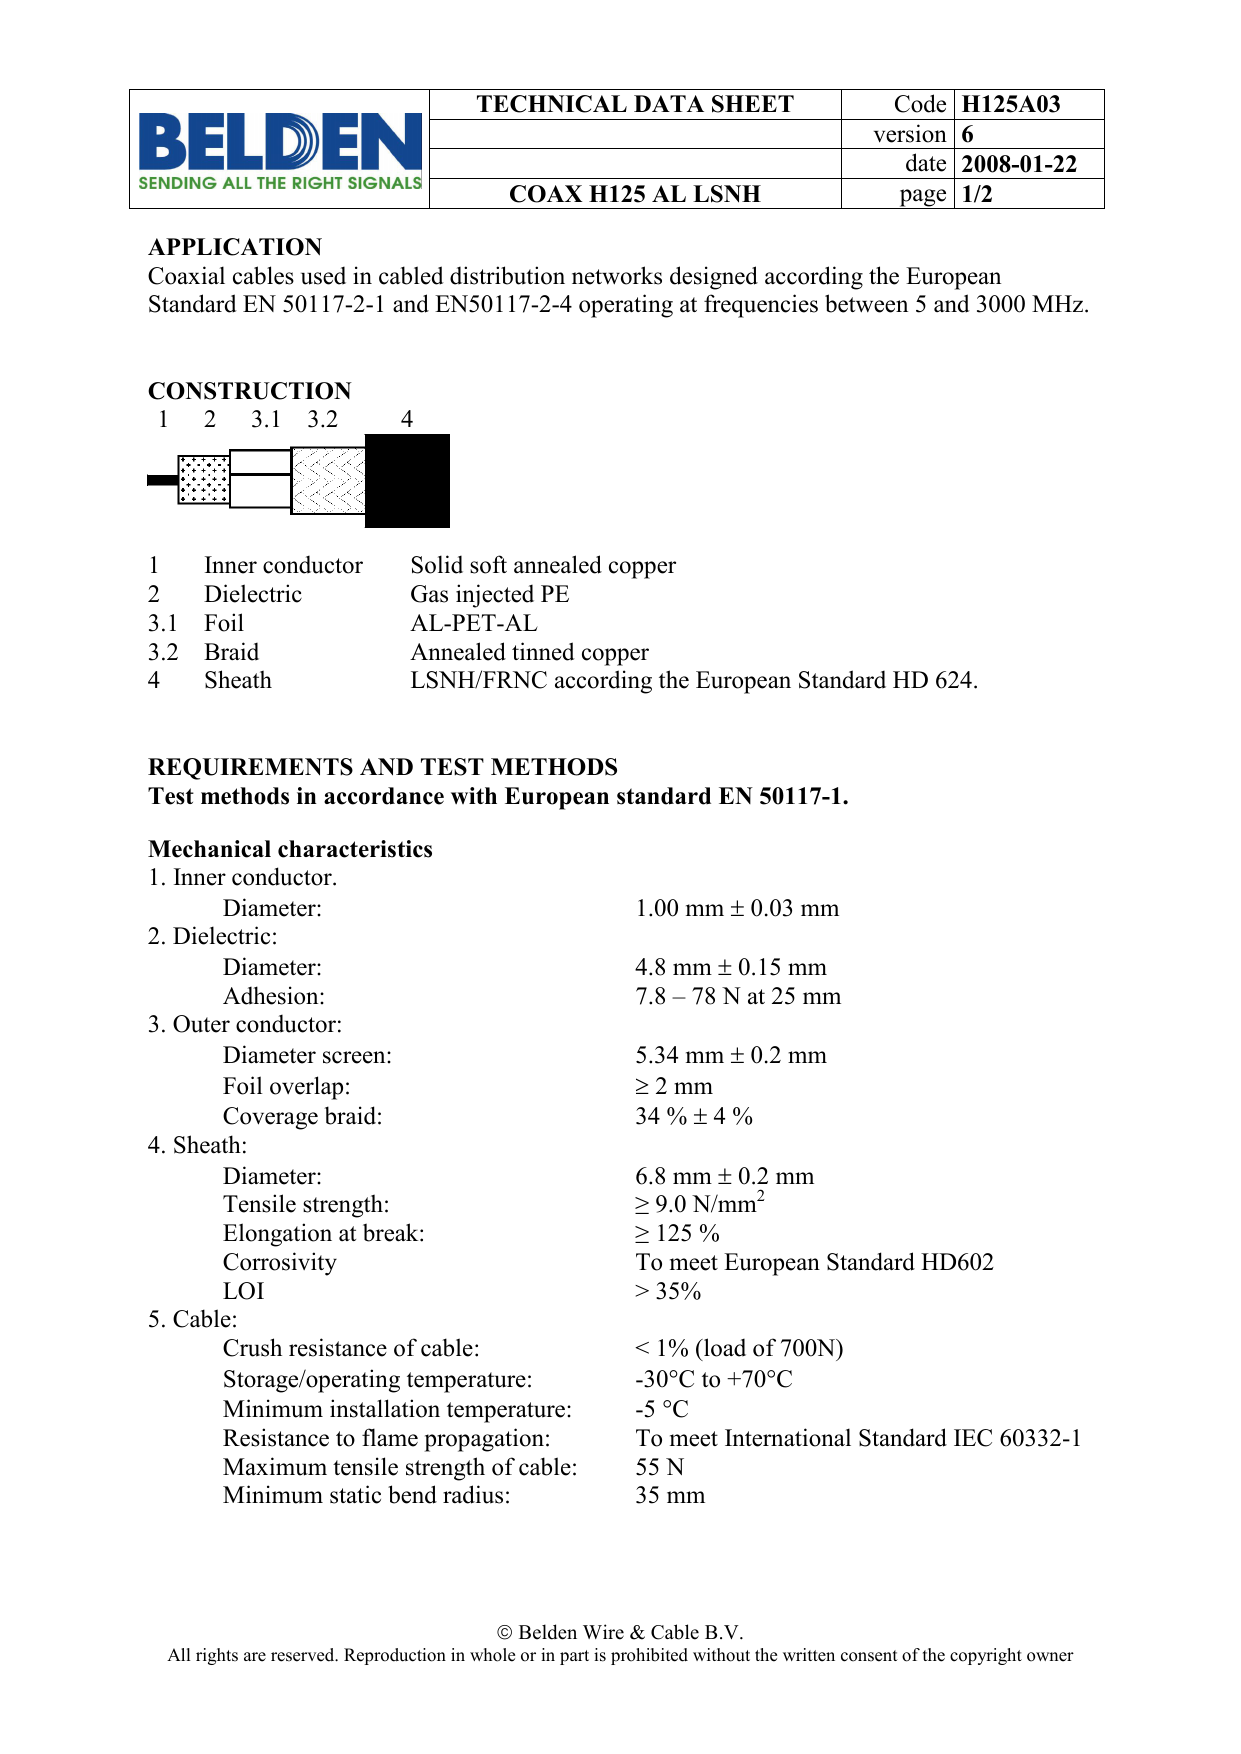 Technical Data Sheet Code H125a03 Manualzz